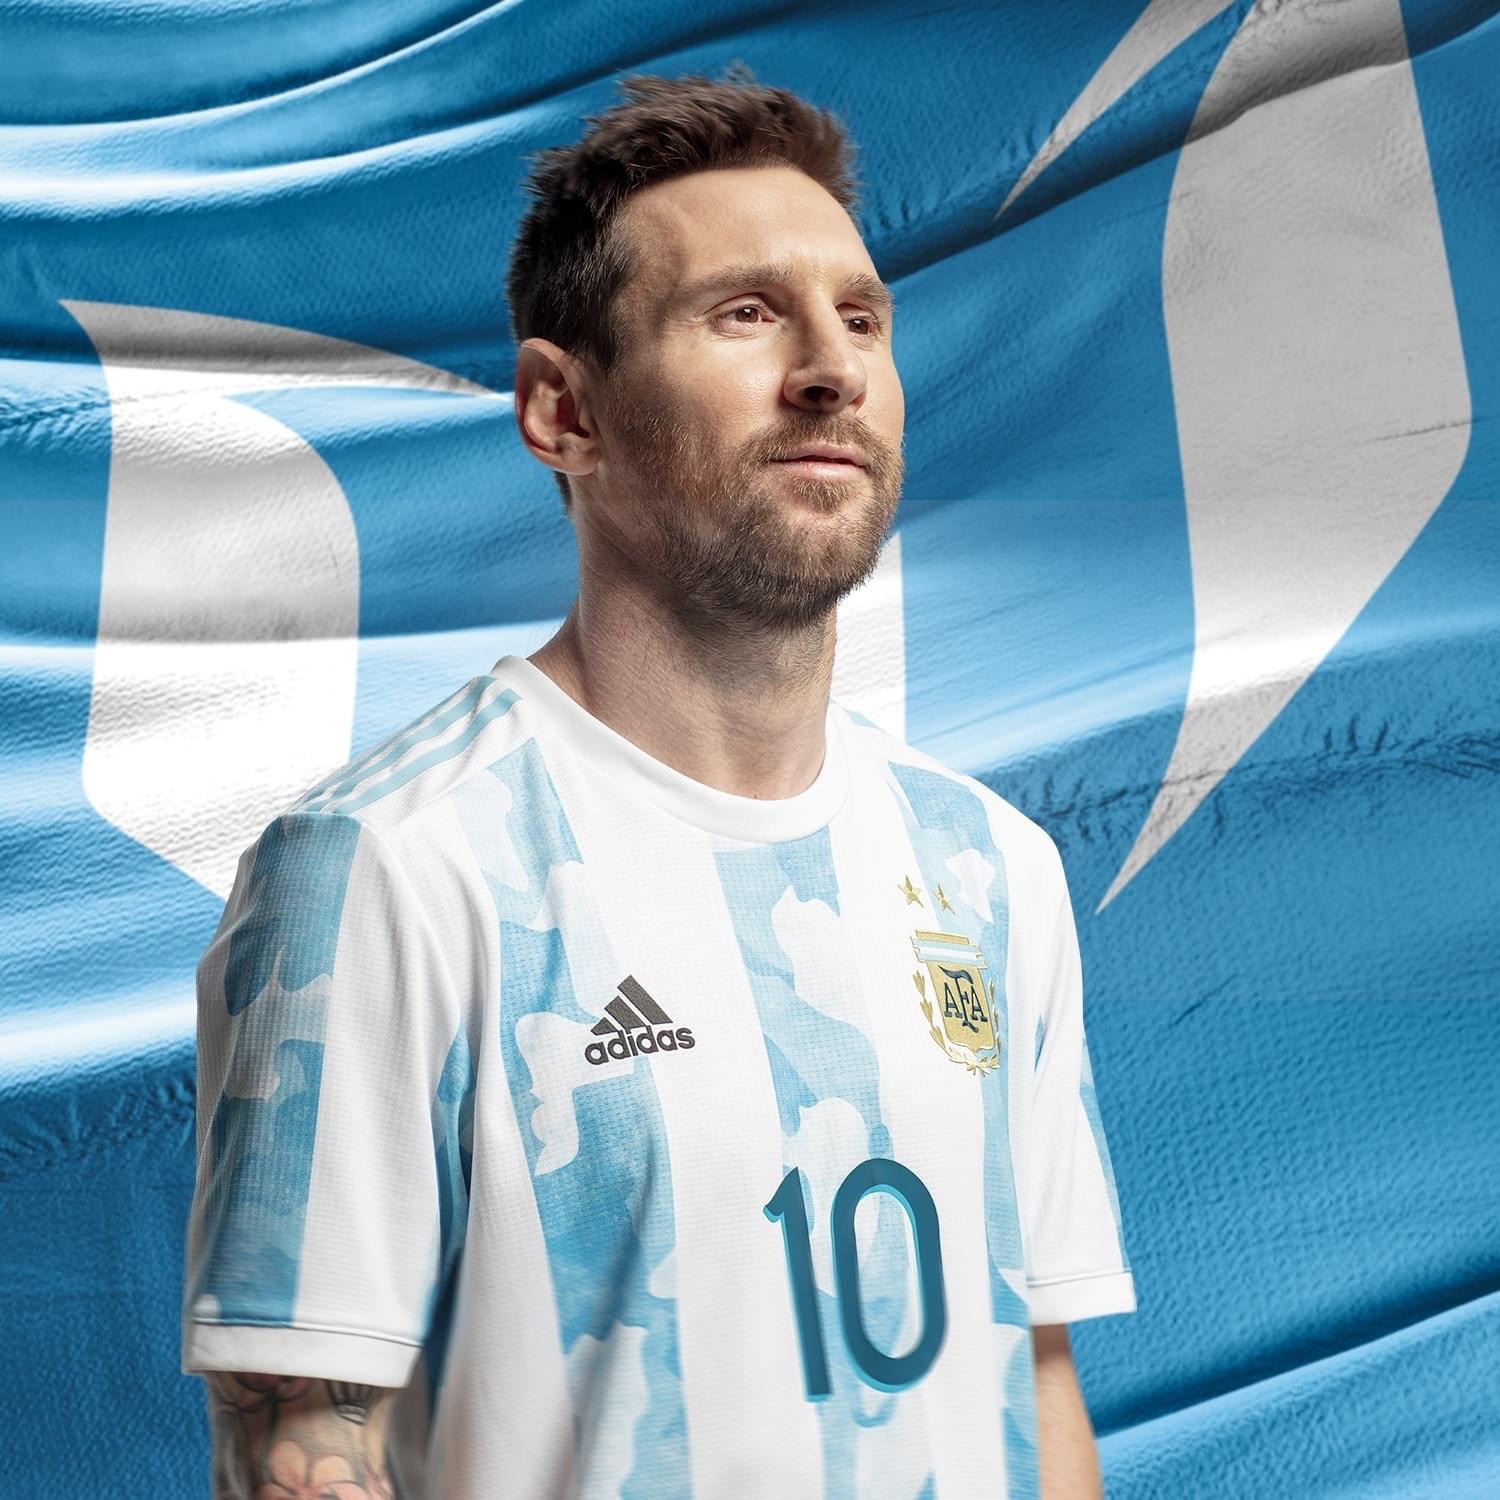 Messi đã từng giành được cúp Nam Mỹ trong sự nghiệp của mình và ảnh của anh khi vừa giành chức vô địch là một bức tranh tuyệt đẹp để xem. Hãy tìm kiếm những bức ảnh đẹp của Messi và cúp Nam Mỹ để cảm nhận được niềm hạnh phúc của anh chàng trong thời điểm đó.